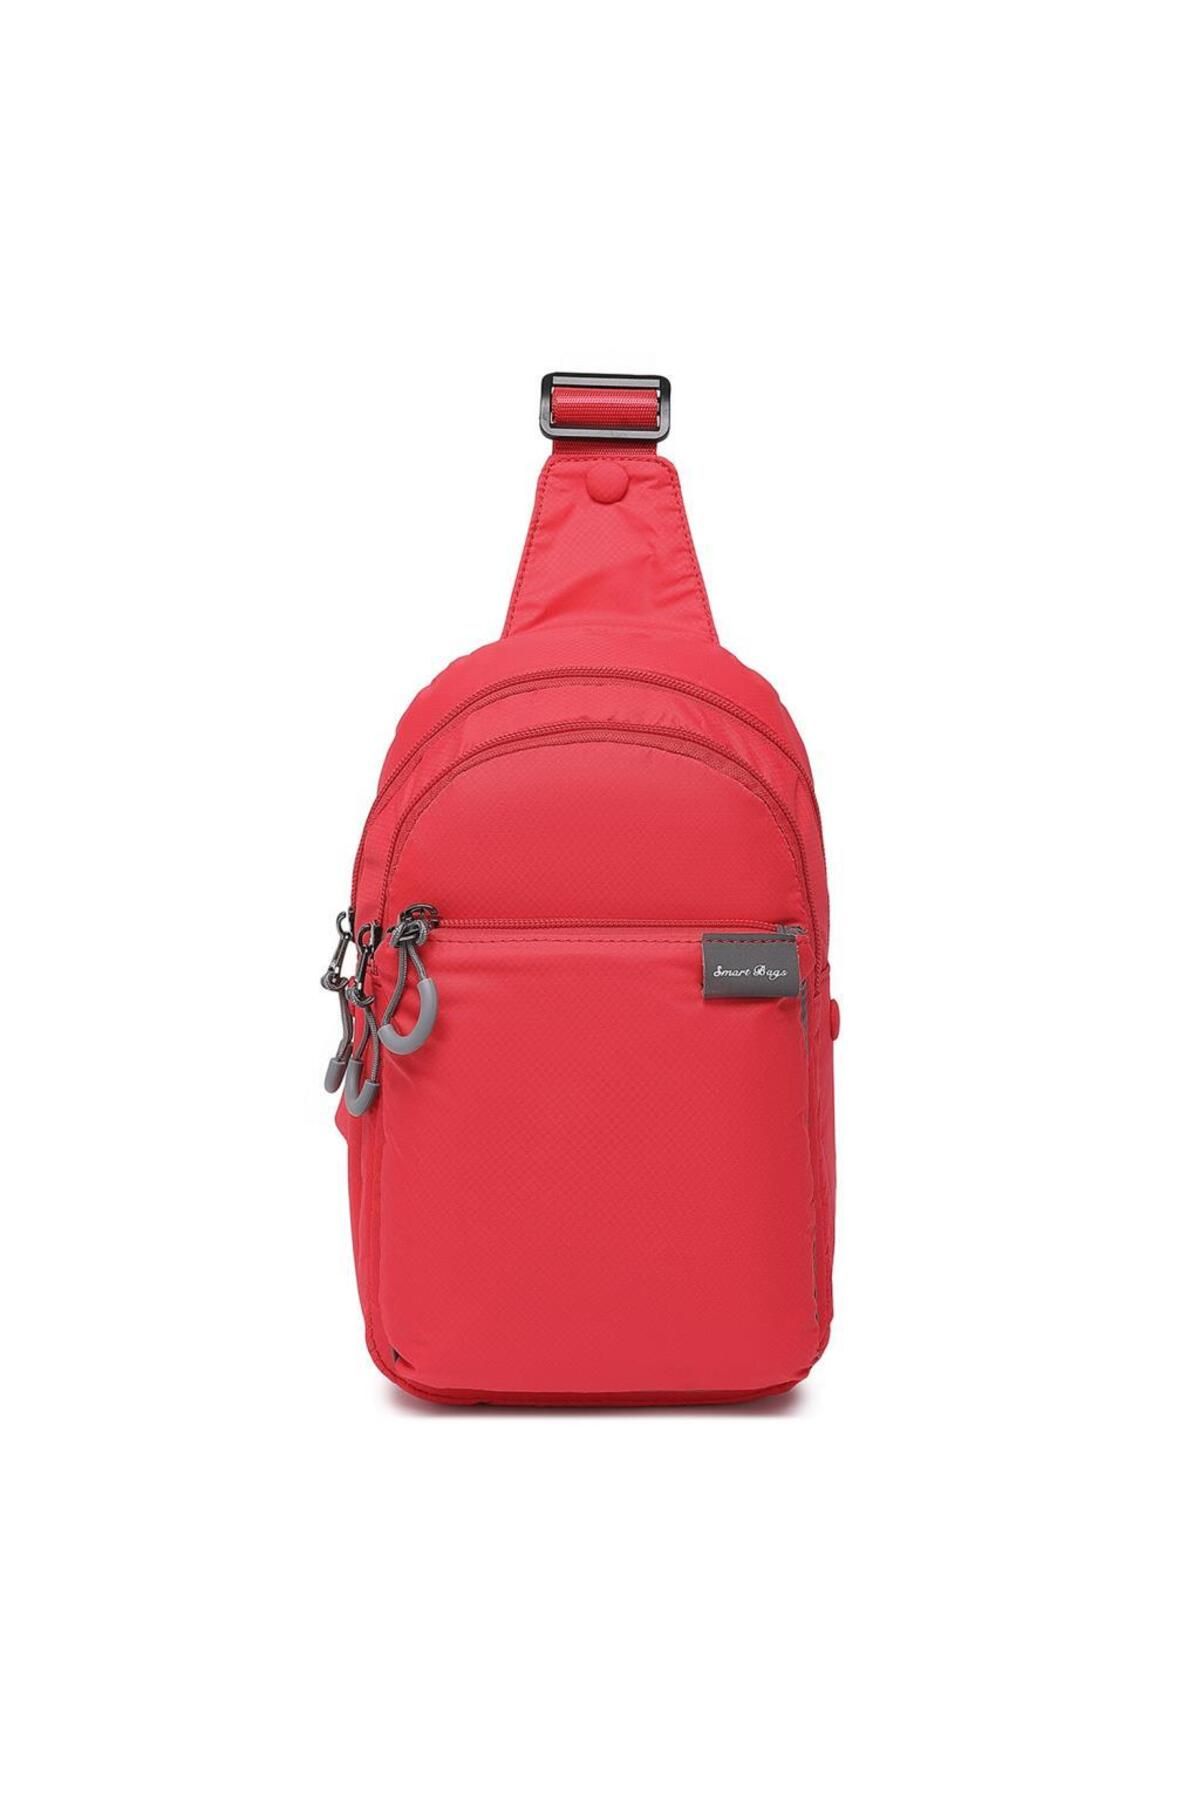 Smart Bags Ekstra Hafif Uniseks Bodybag Omuz Çantası 3145